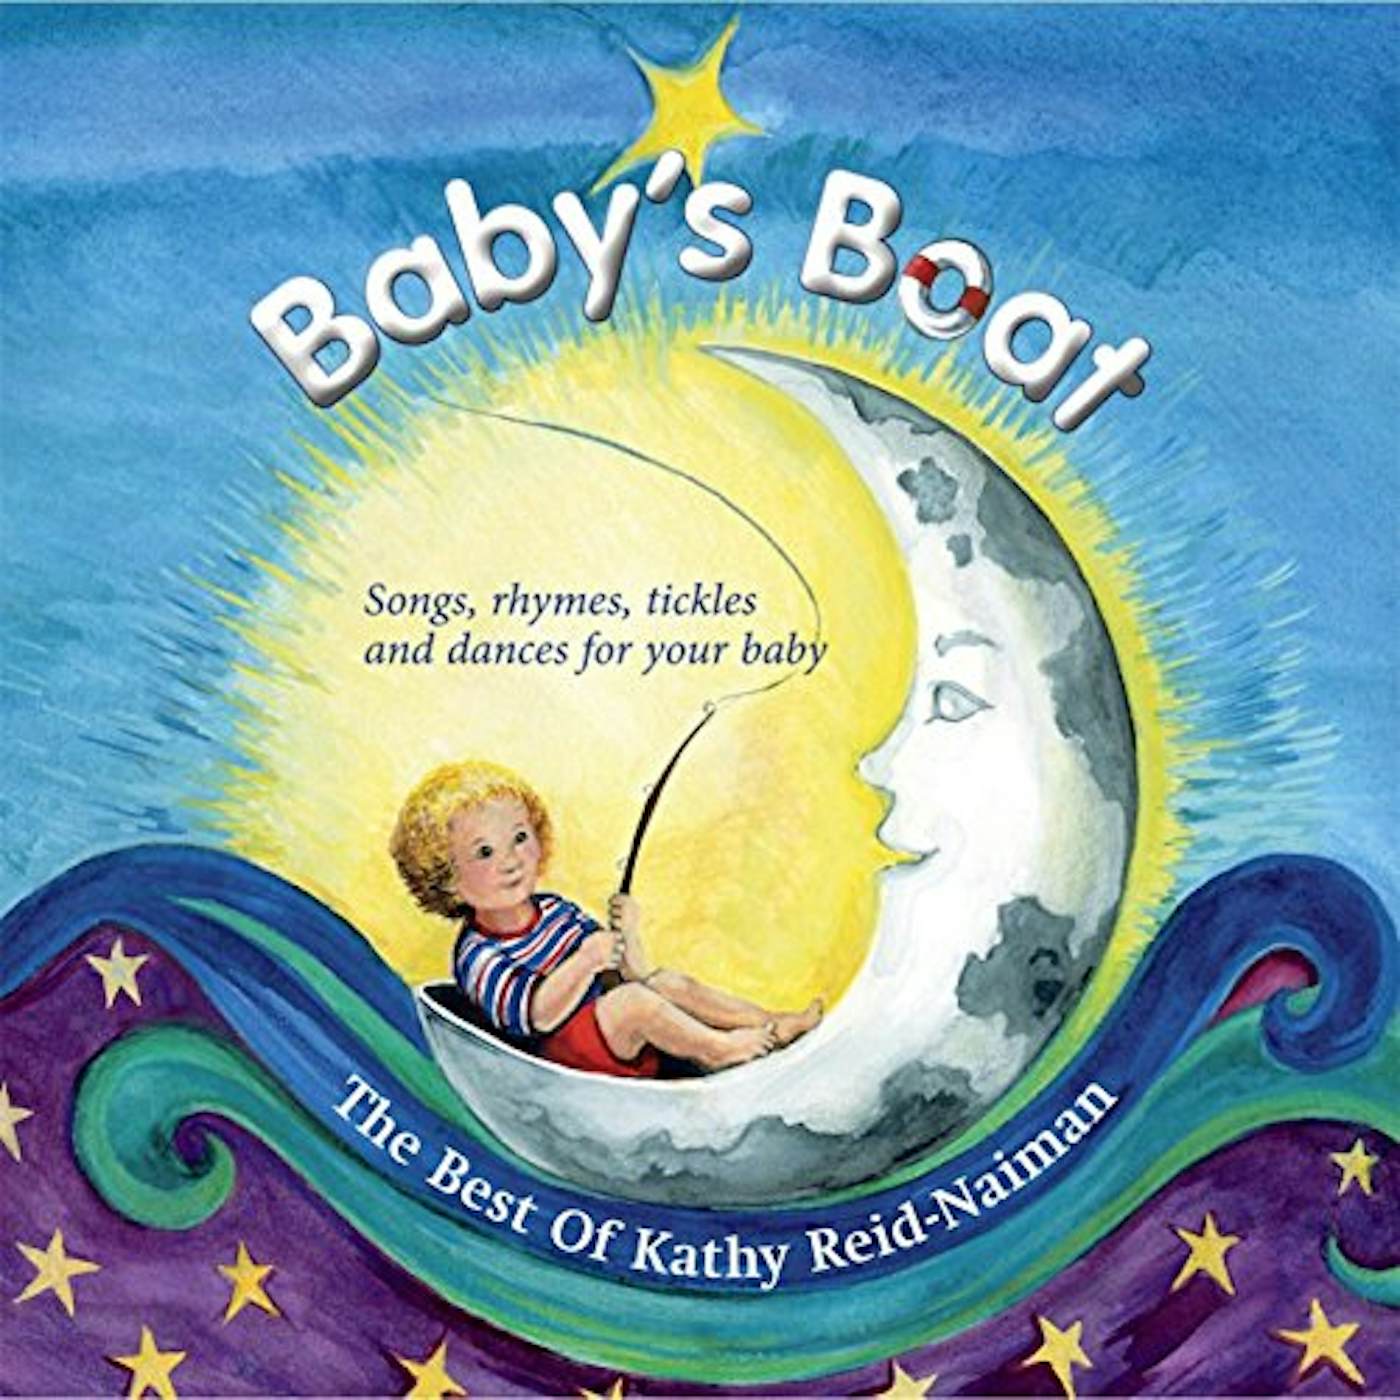 BABY'S BOAT: THE BEST OF KATHY REID-NAIMAN CD